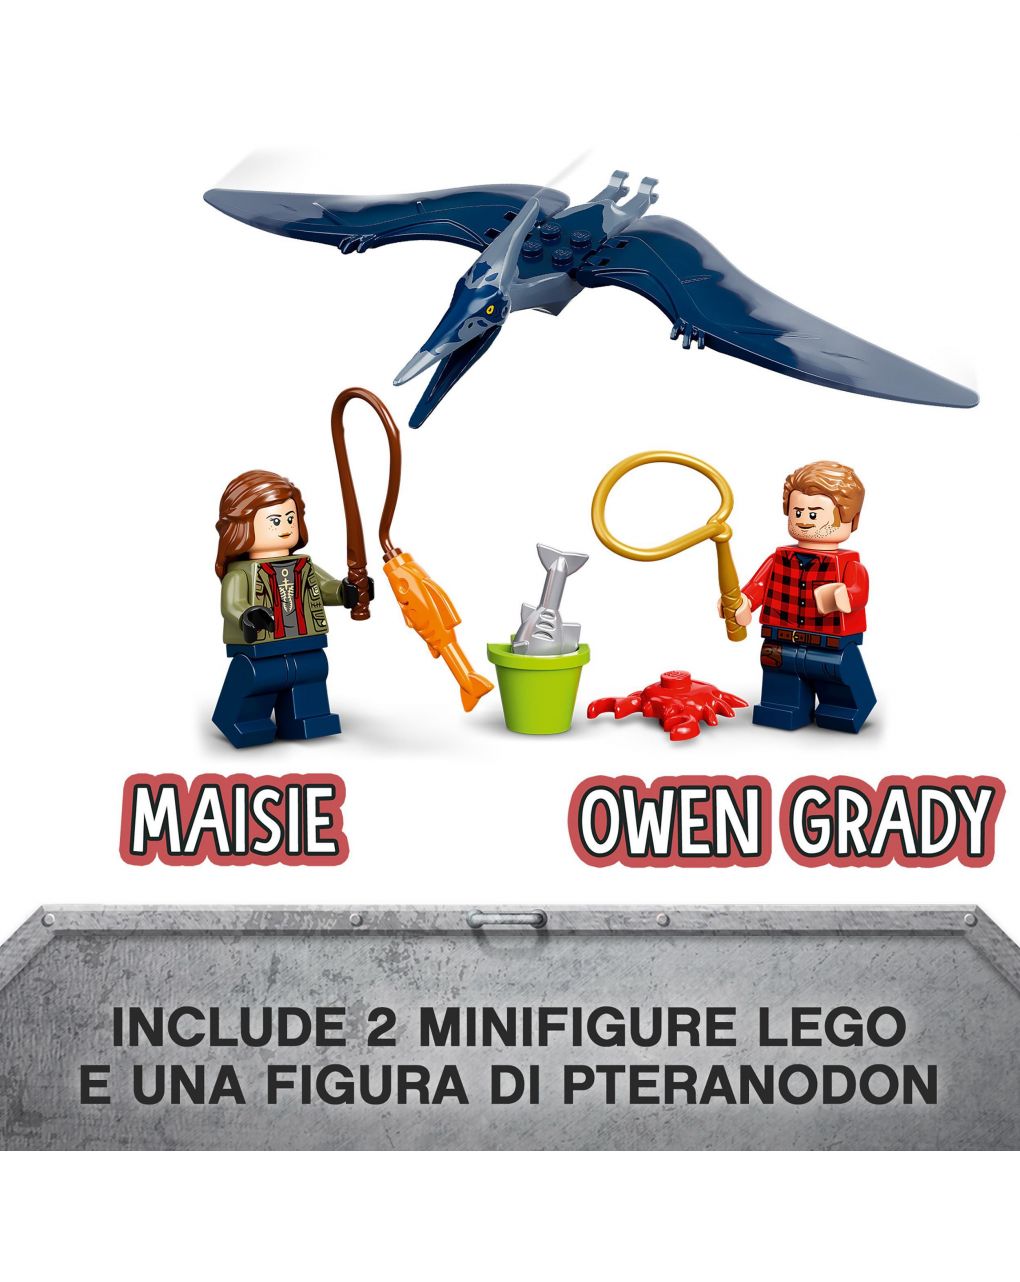 Lego jurassic world pteranodon chase 76943 - Lego